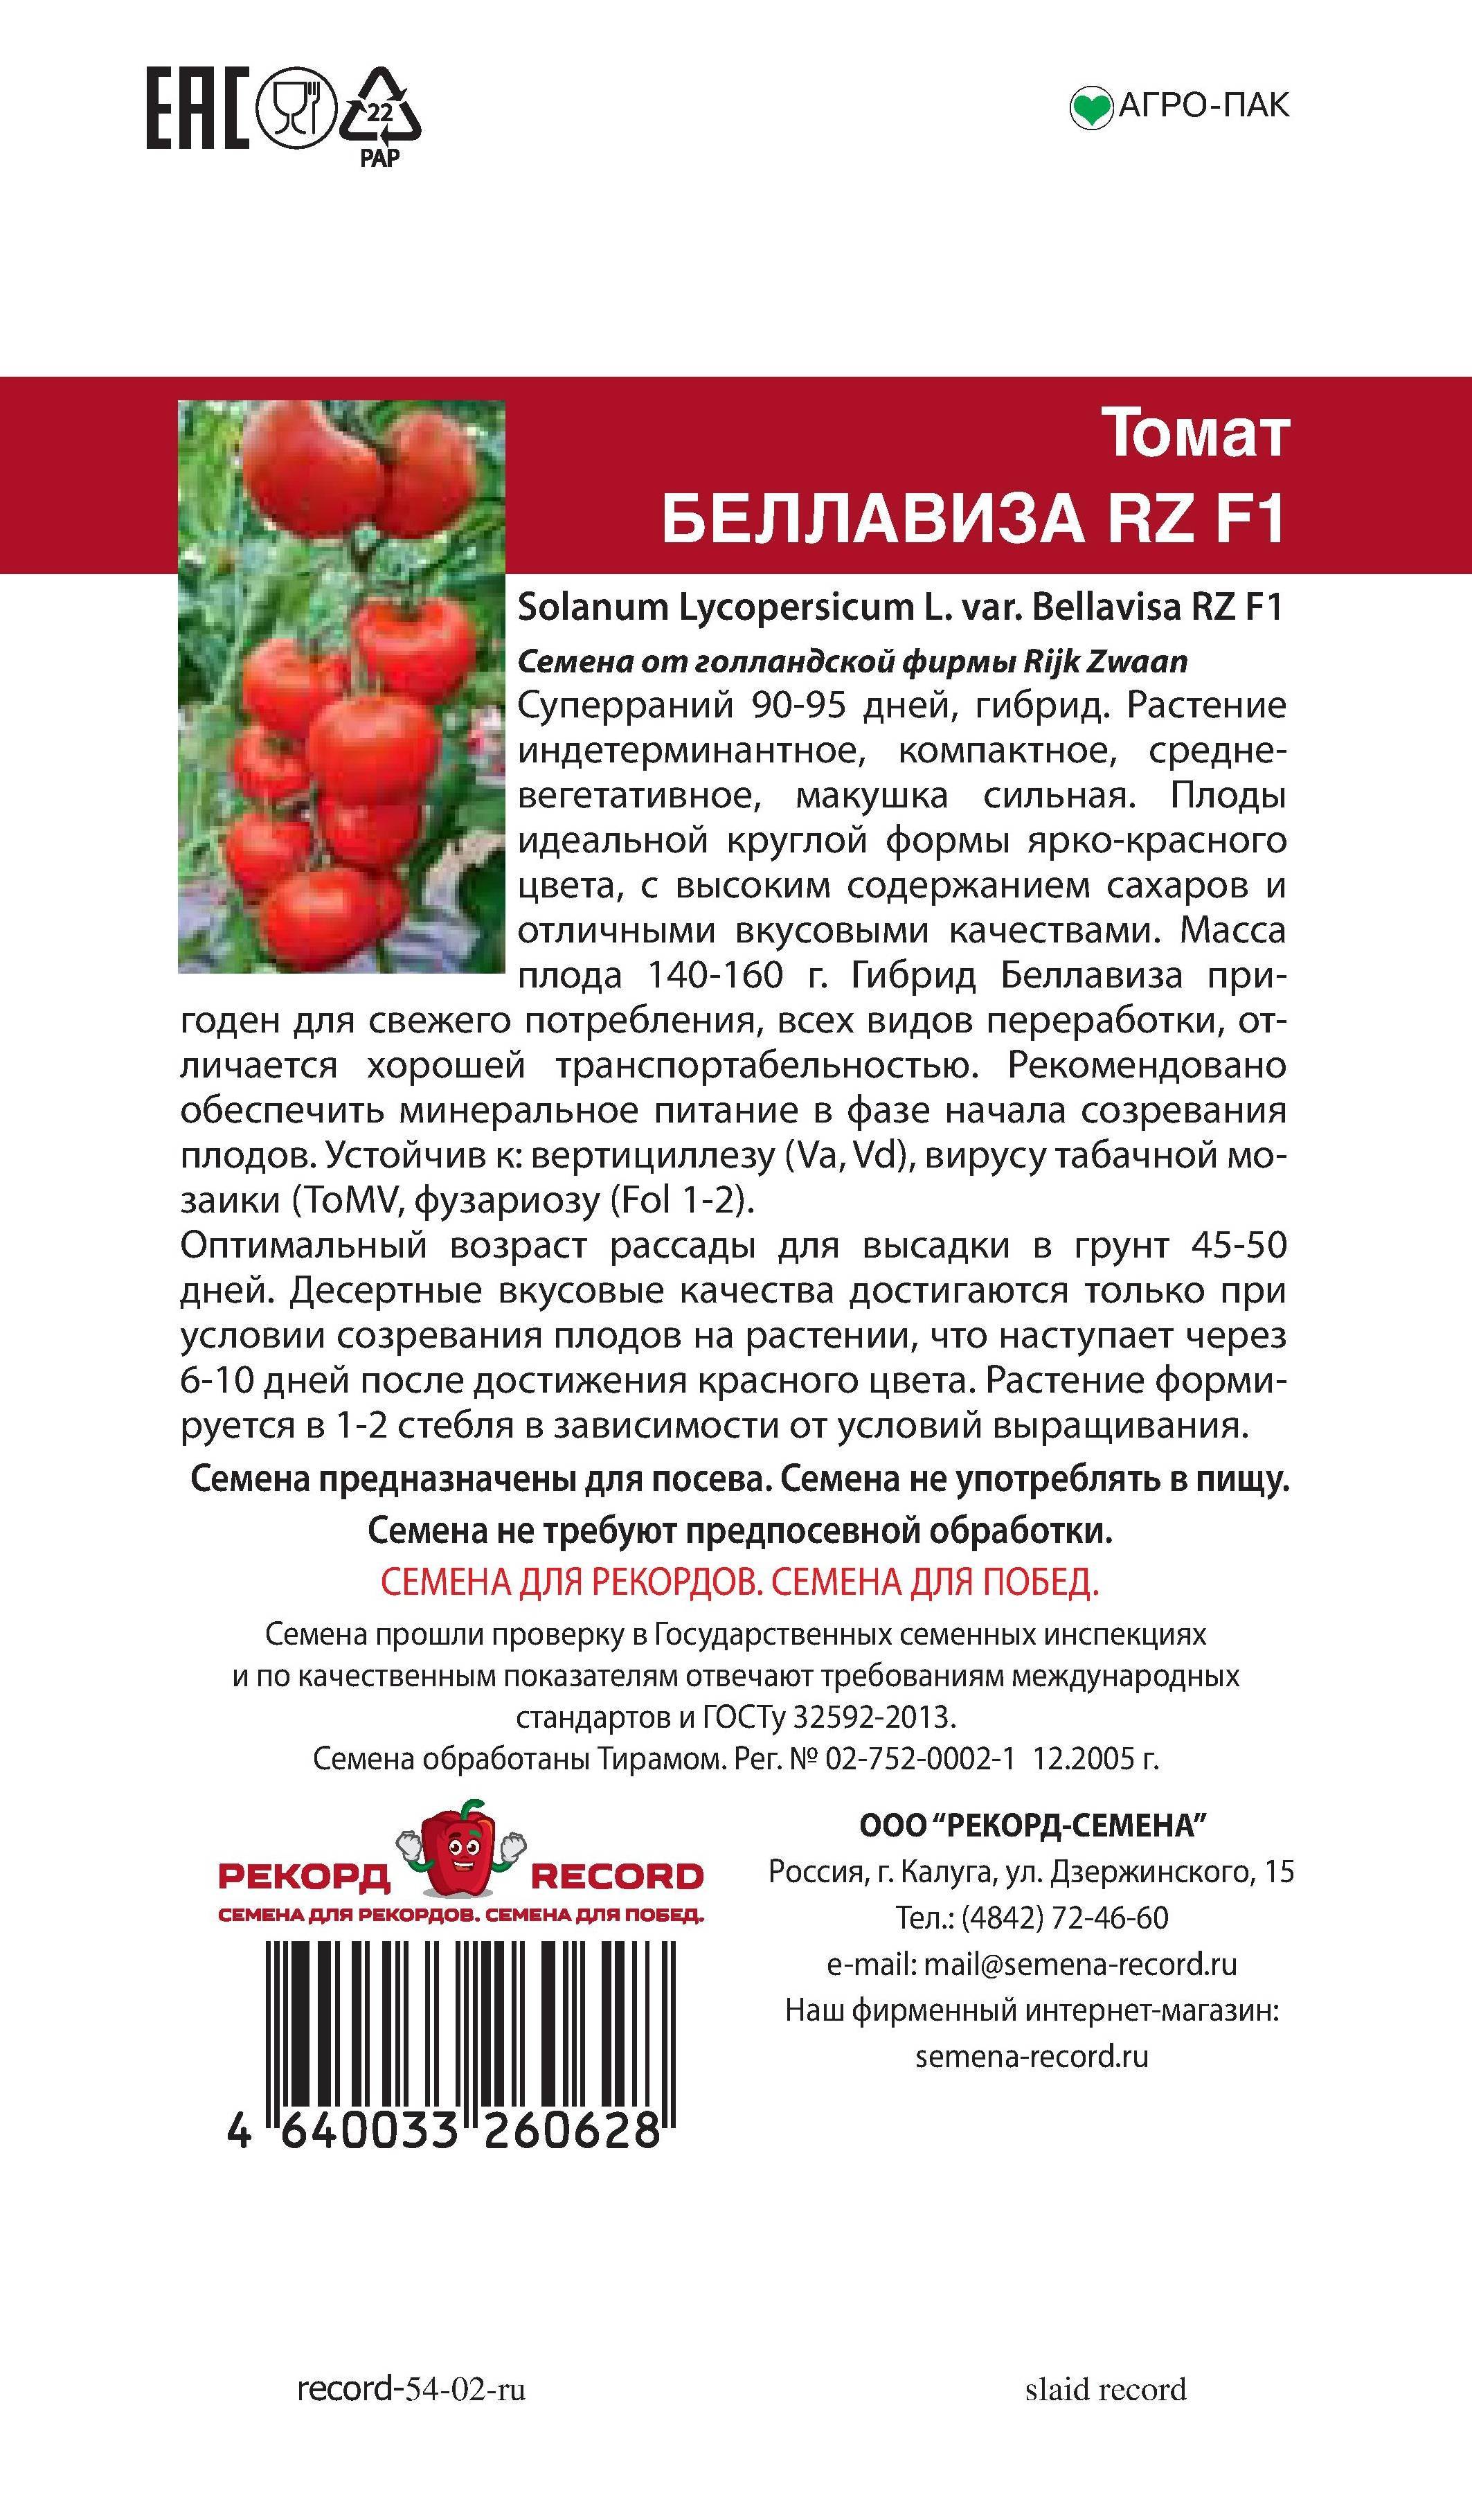 Томат казанова: описание сорта помидоров оригинальной формы, выращивание и отзывы